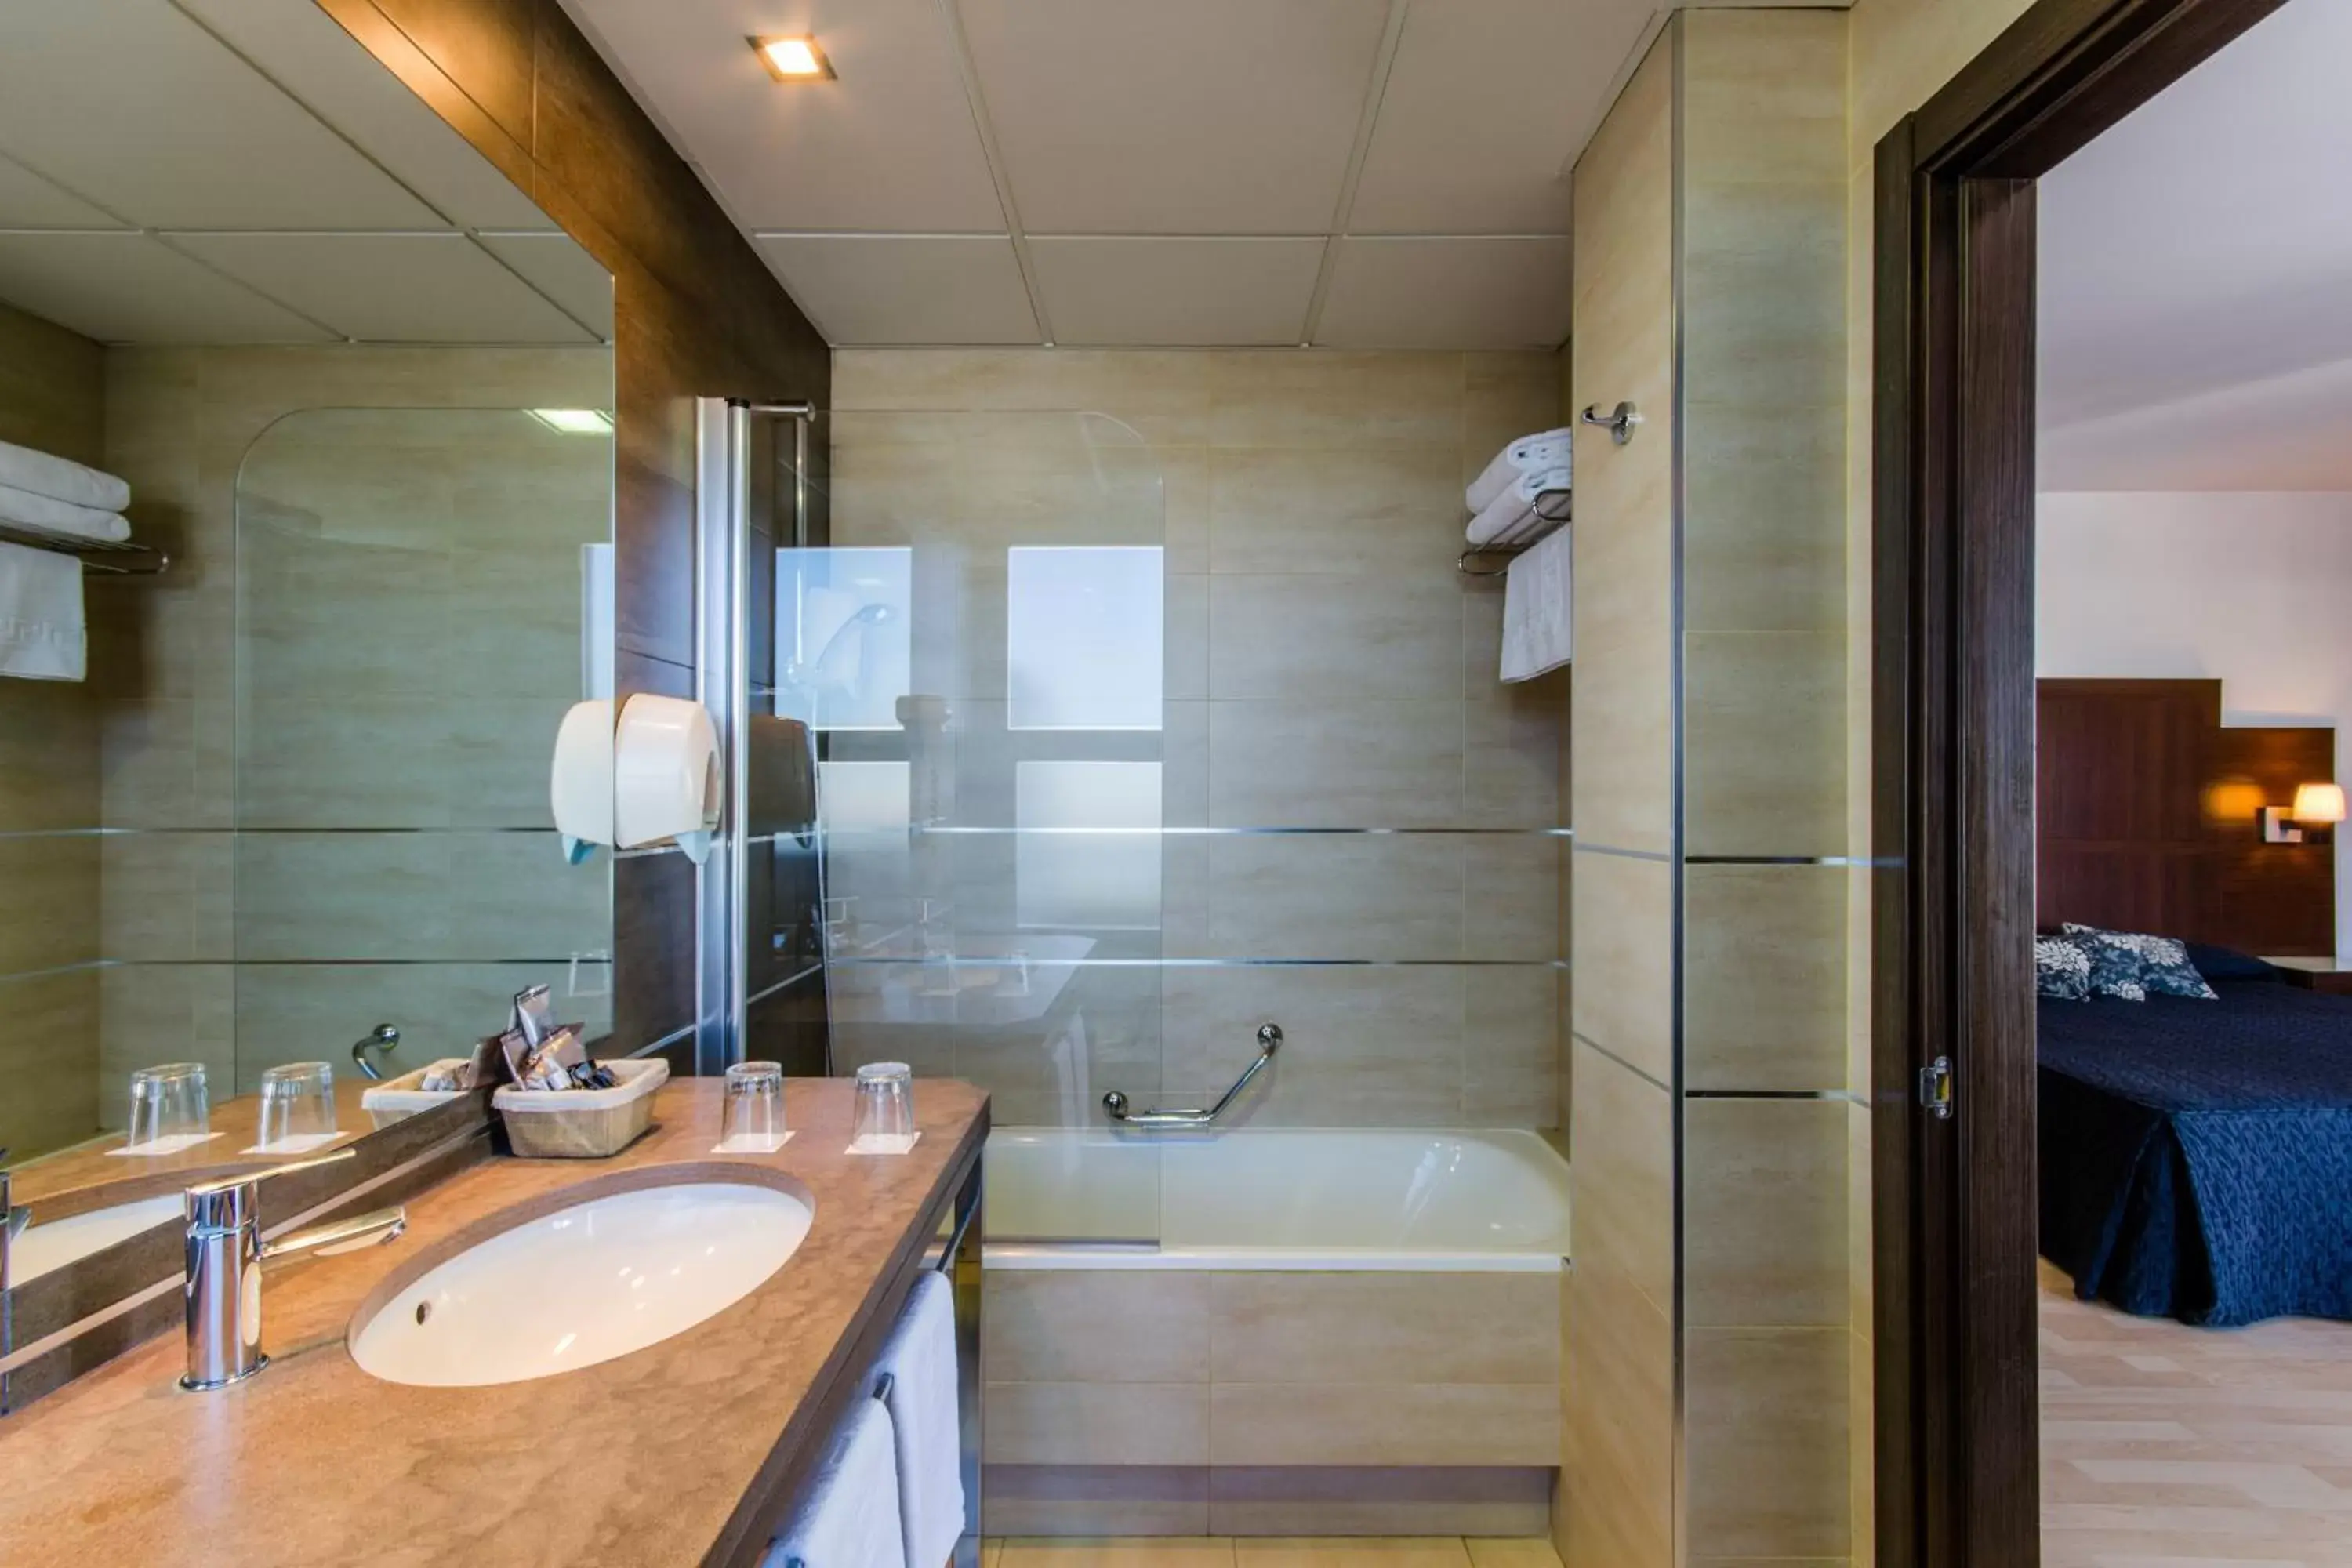 Shower, Bathroom in YIT Conquista de Granada